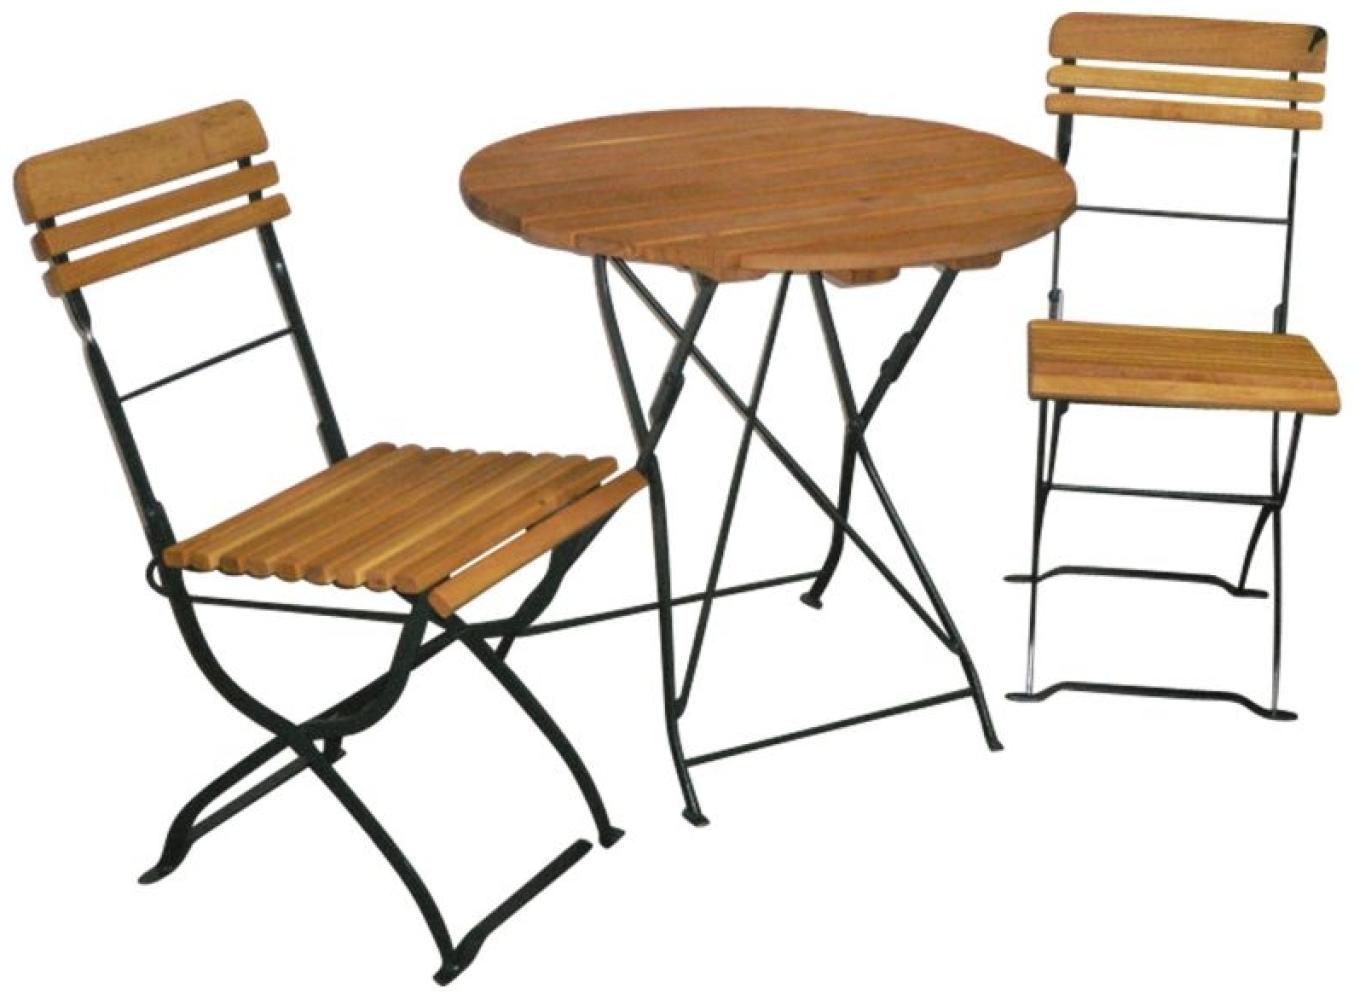 Gartengarnitur Biergartengarnitur SitzgruppeTisch Stuhl 3-teilig, Flachstahl dunkelgrün + Robinie, klappbar Bild 1